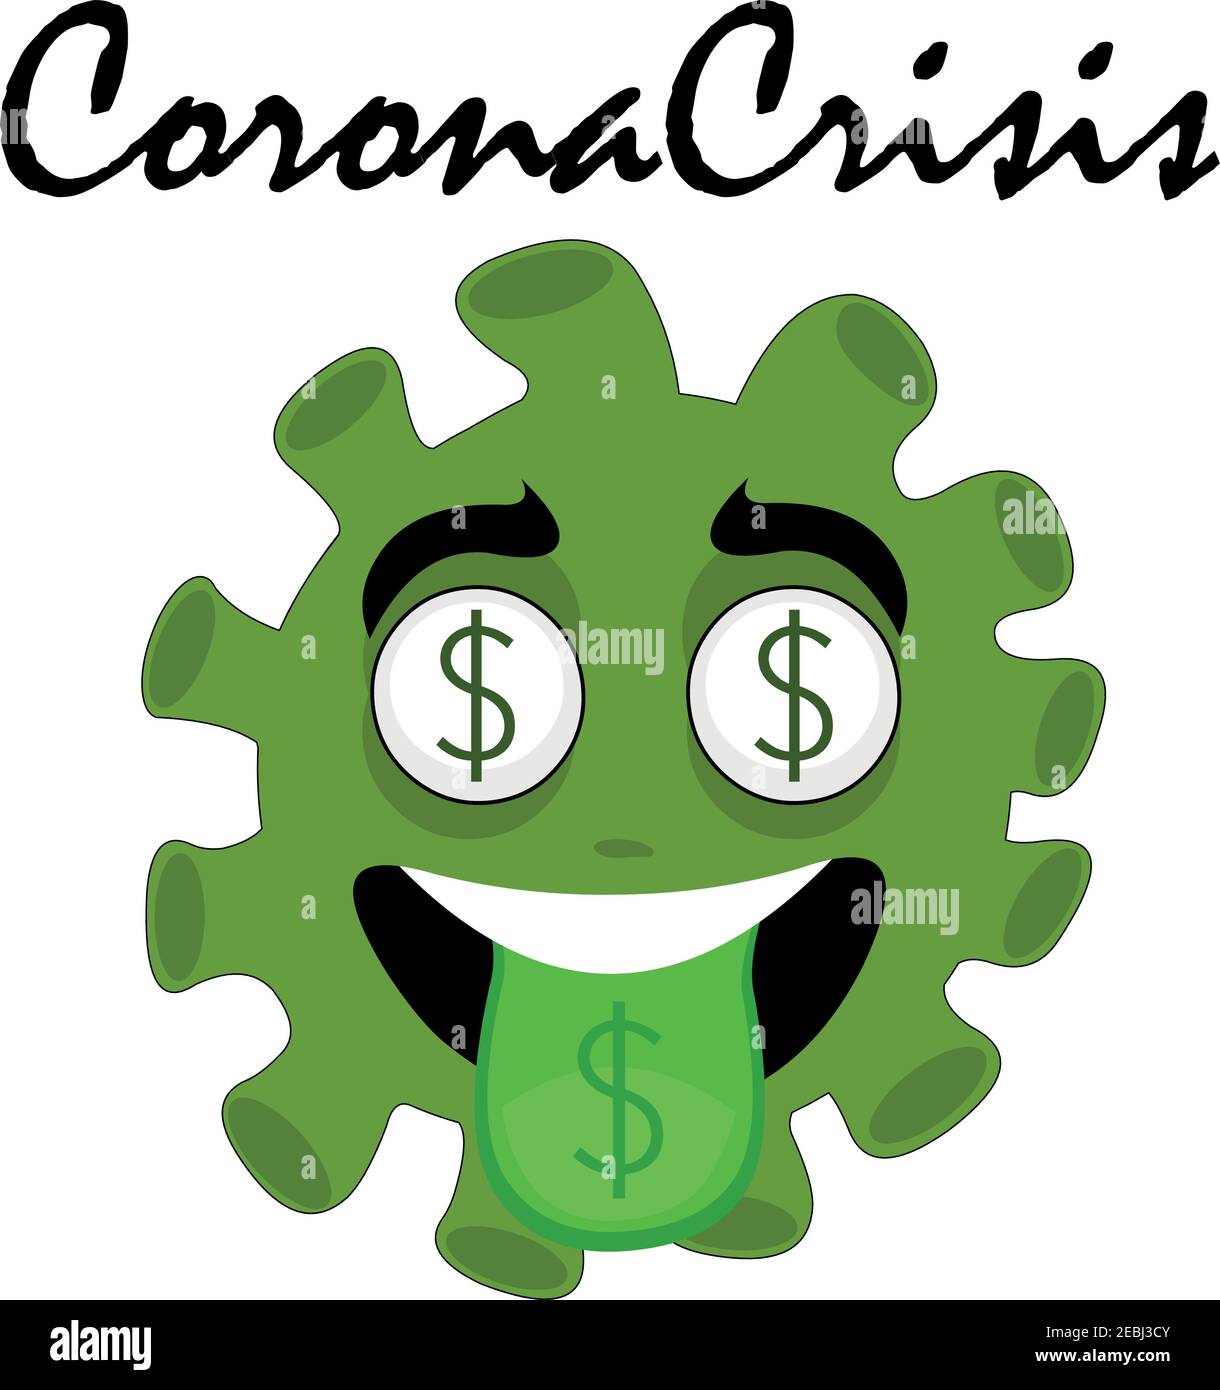 Emoticon vettoriale illustrazione di un personaggio di un cartone animato coronavirus con il simbolo del dollaro negli occhi e nella lingua Illustrazione Vettoriale